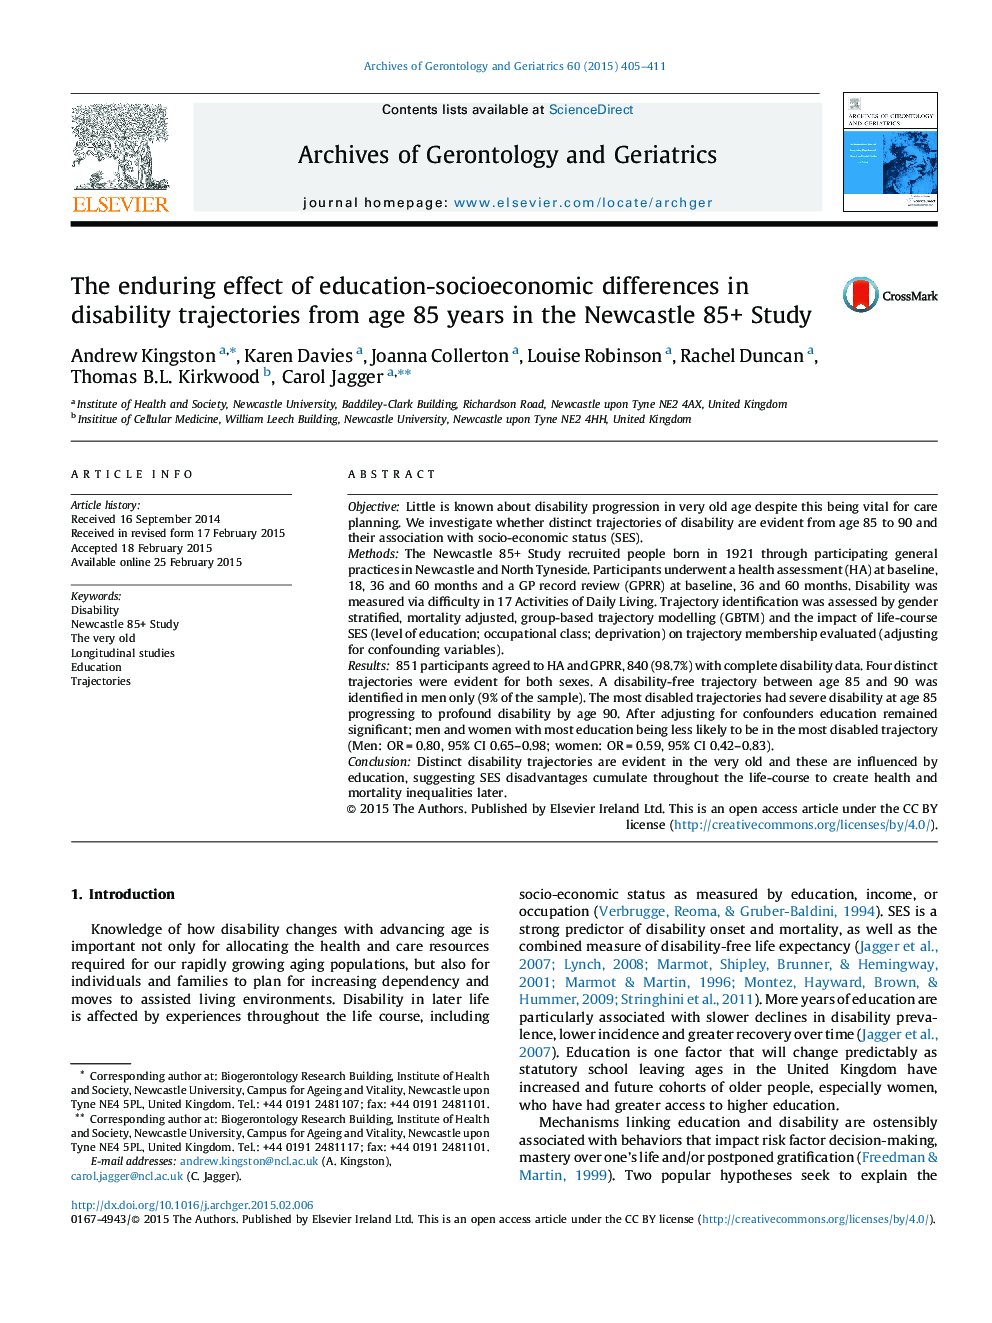 تأثیر پایدار تفاوتهای تحصیلی، اقتصادی و اجتماعی در مسیرهای معلولیت از سن 85 سالگی در مطالعه نیوکاسل 85+ 